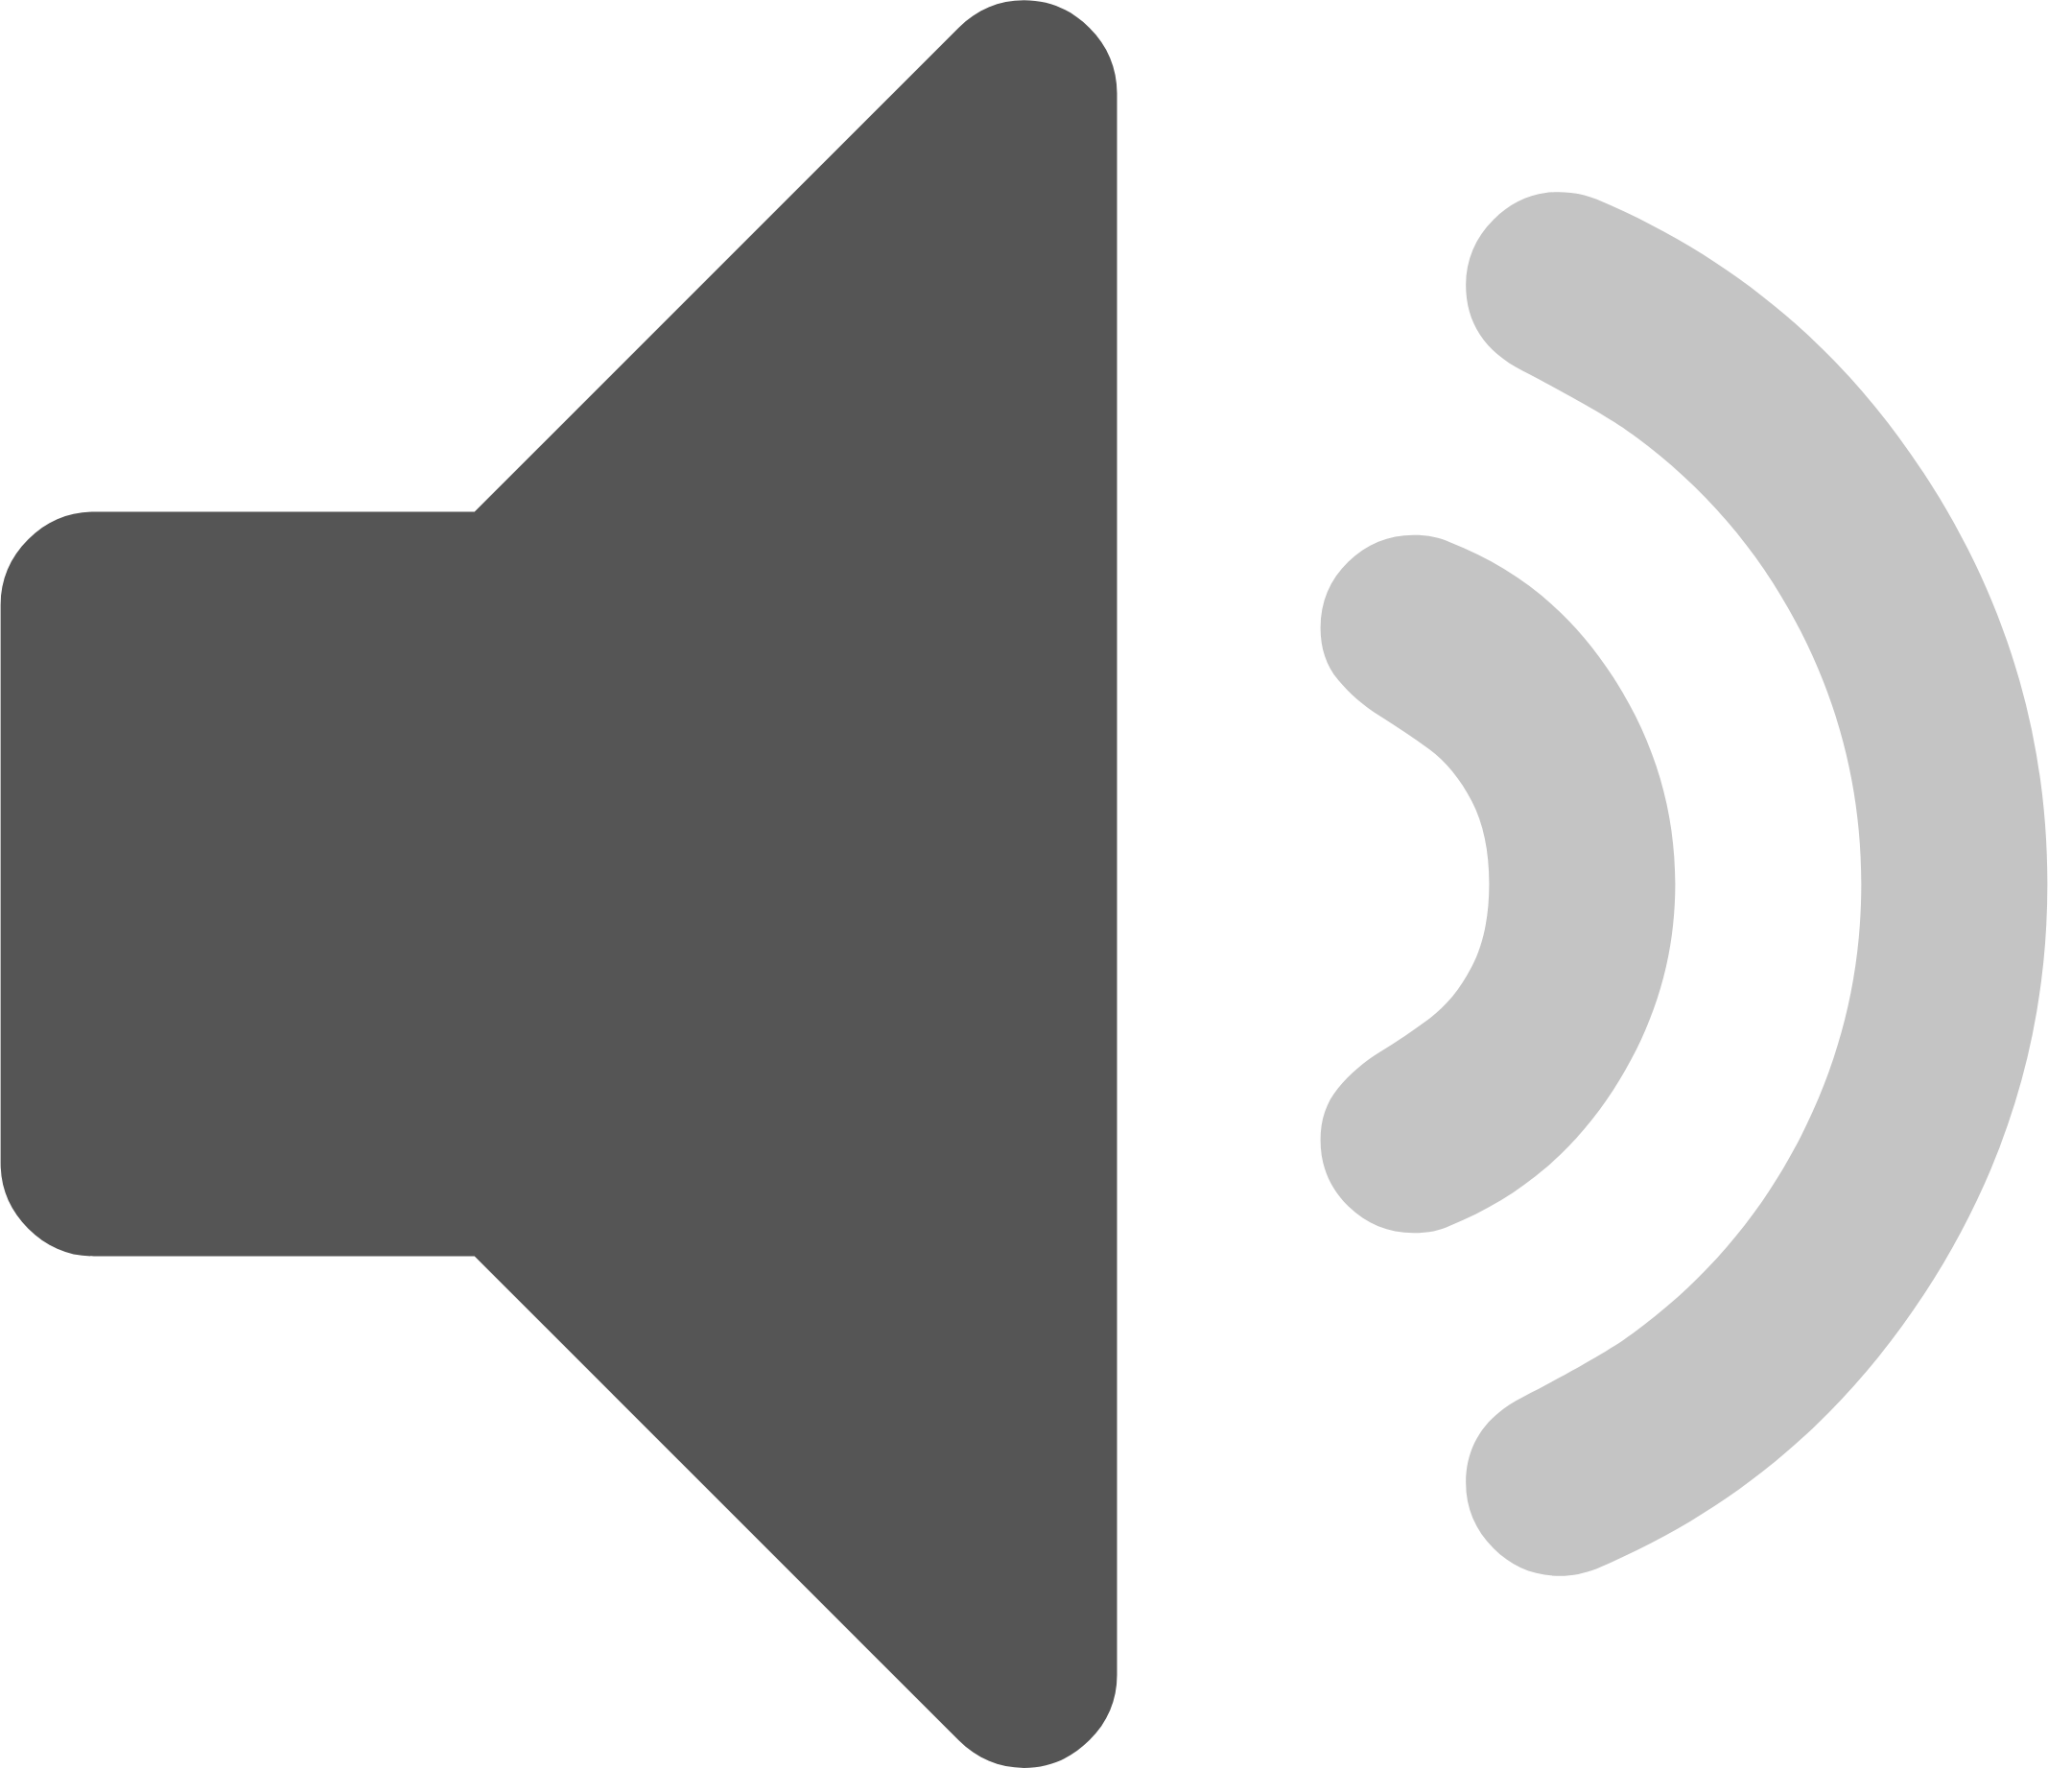 audio volume low panel icon